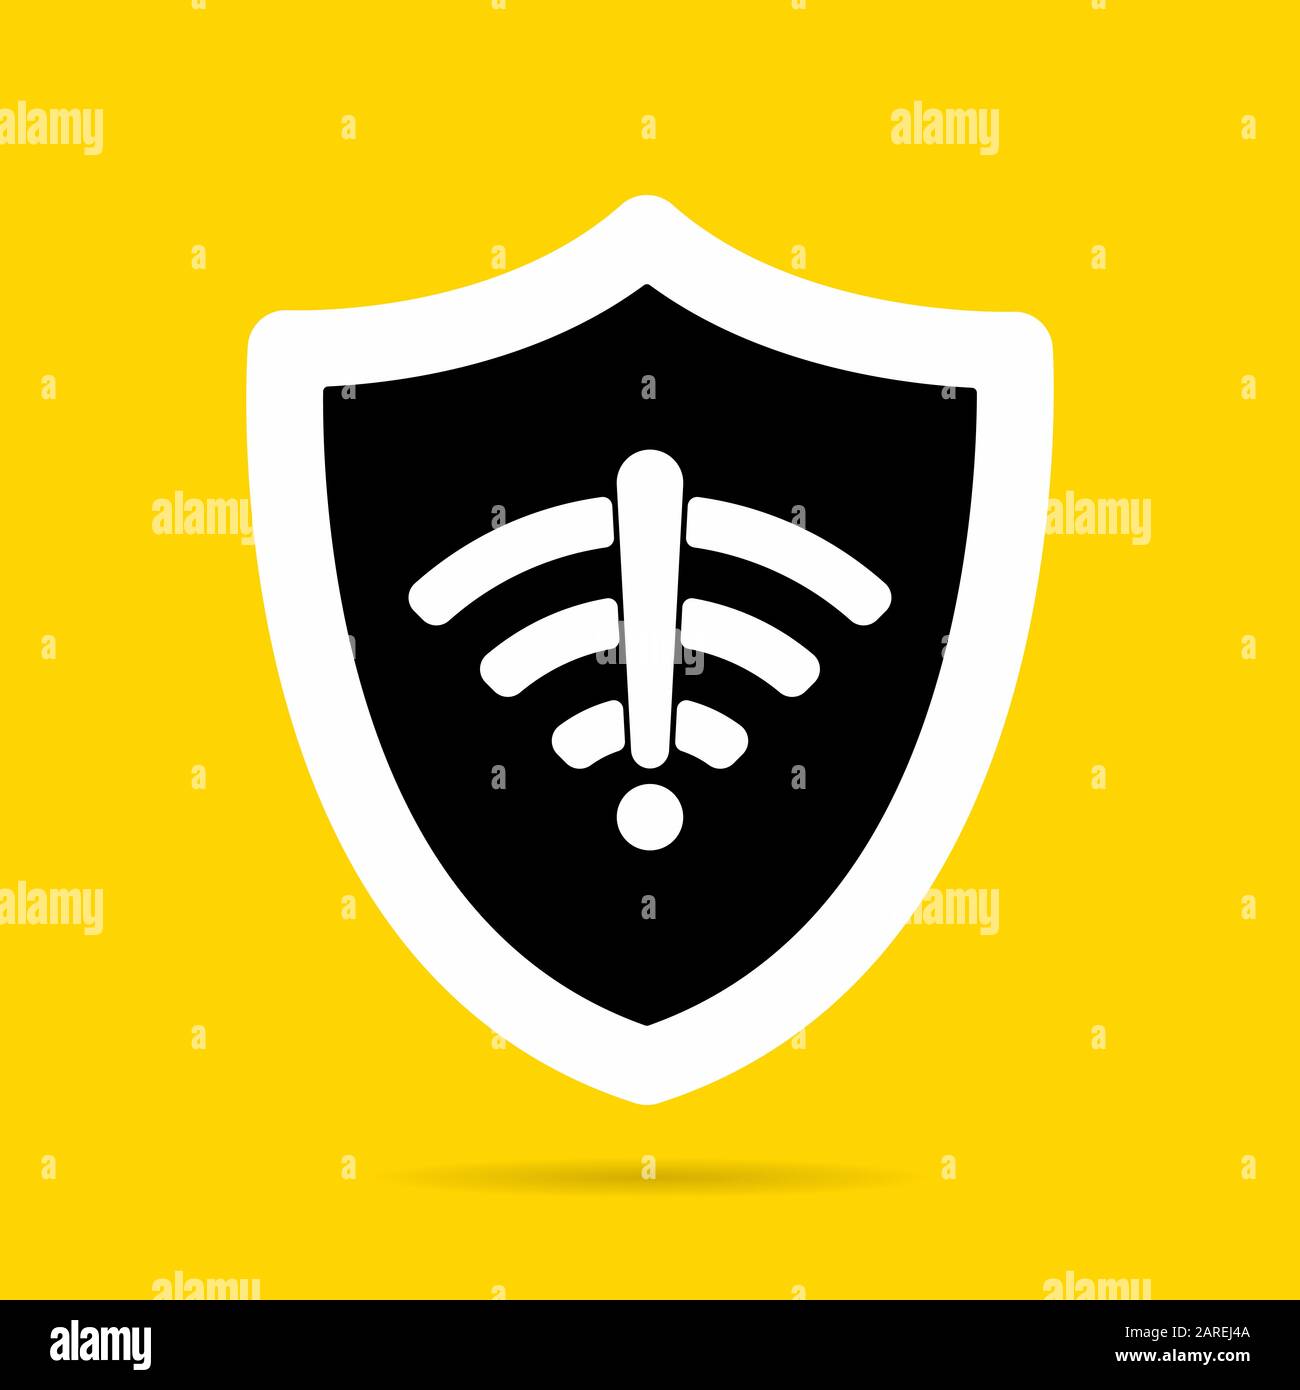 Wireless-Schutzabdeckung ohne wi-fi-Symbol - Vektor-Abbildung mit flachem Design. WiFi-Internet-Signalsymbole im Schutzschild isoliert auf gelbem Hintergrund. Stock Vektor